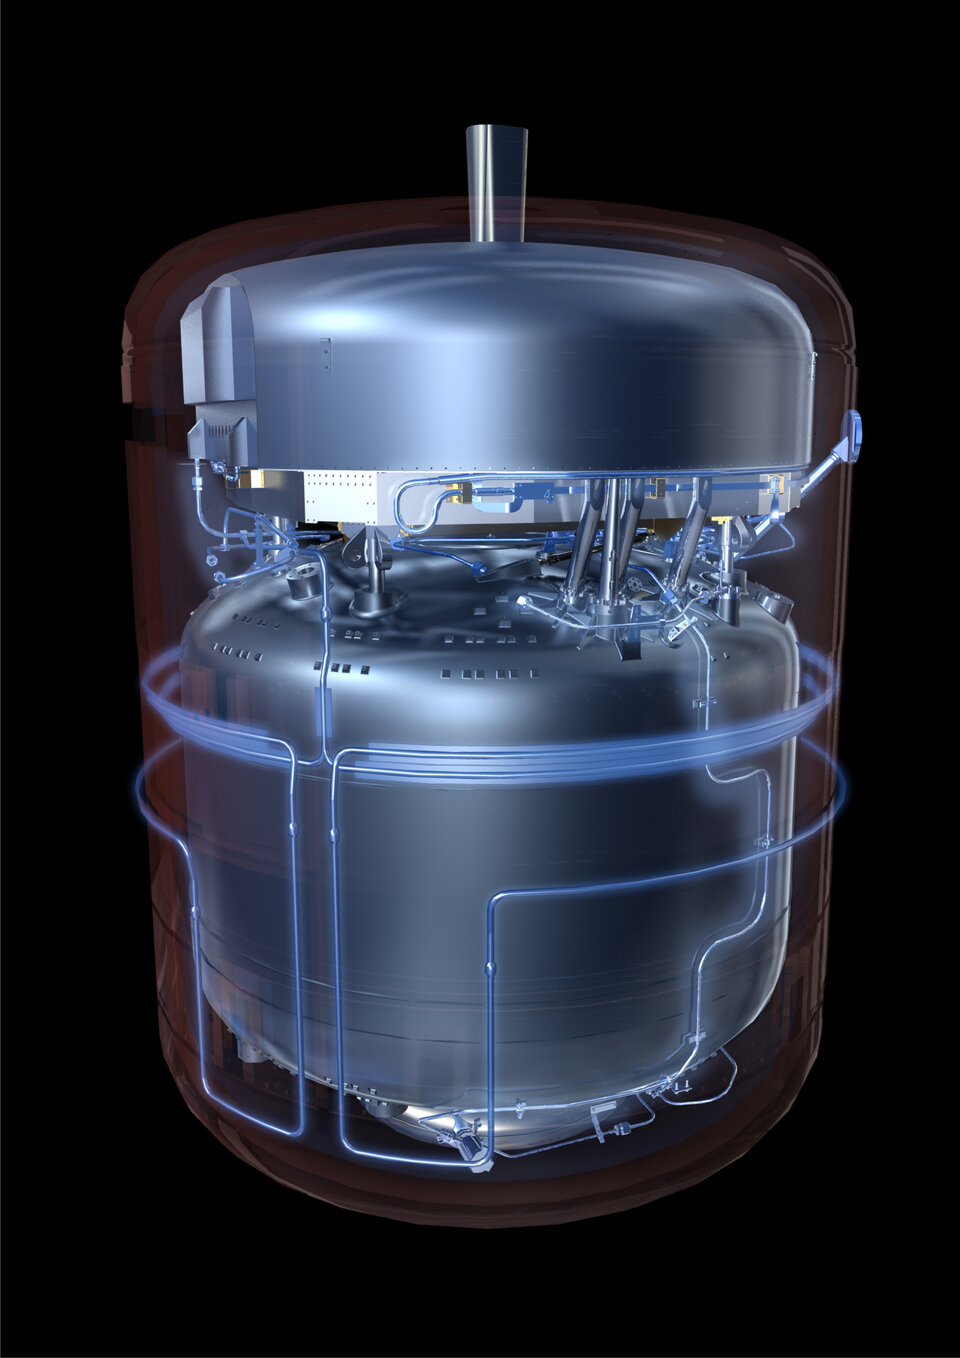 Herschels hjärta är en stor termos, den så kallade kryostaten, som håller detektorerna kylda till nära den absoluta nollpunkten.